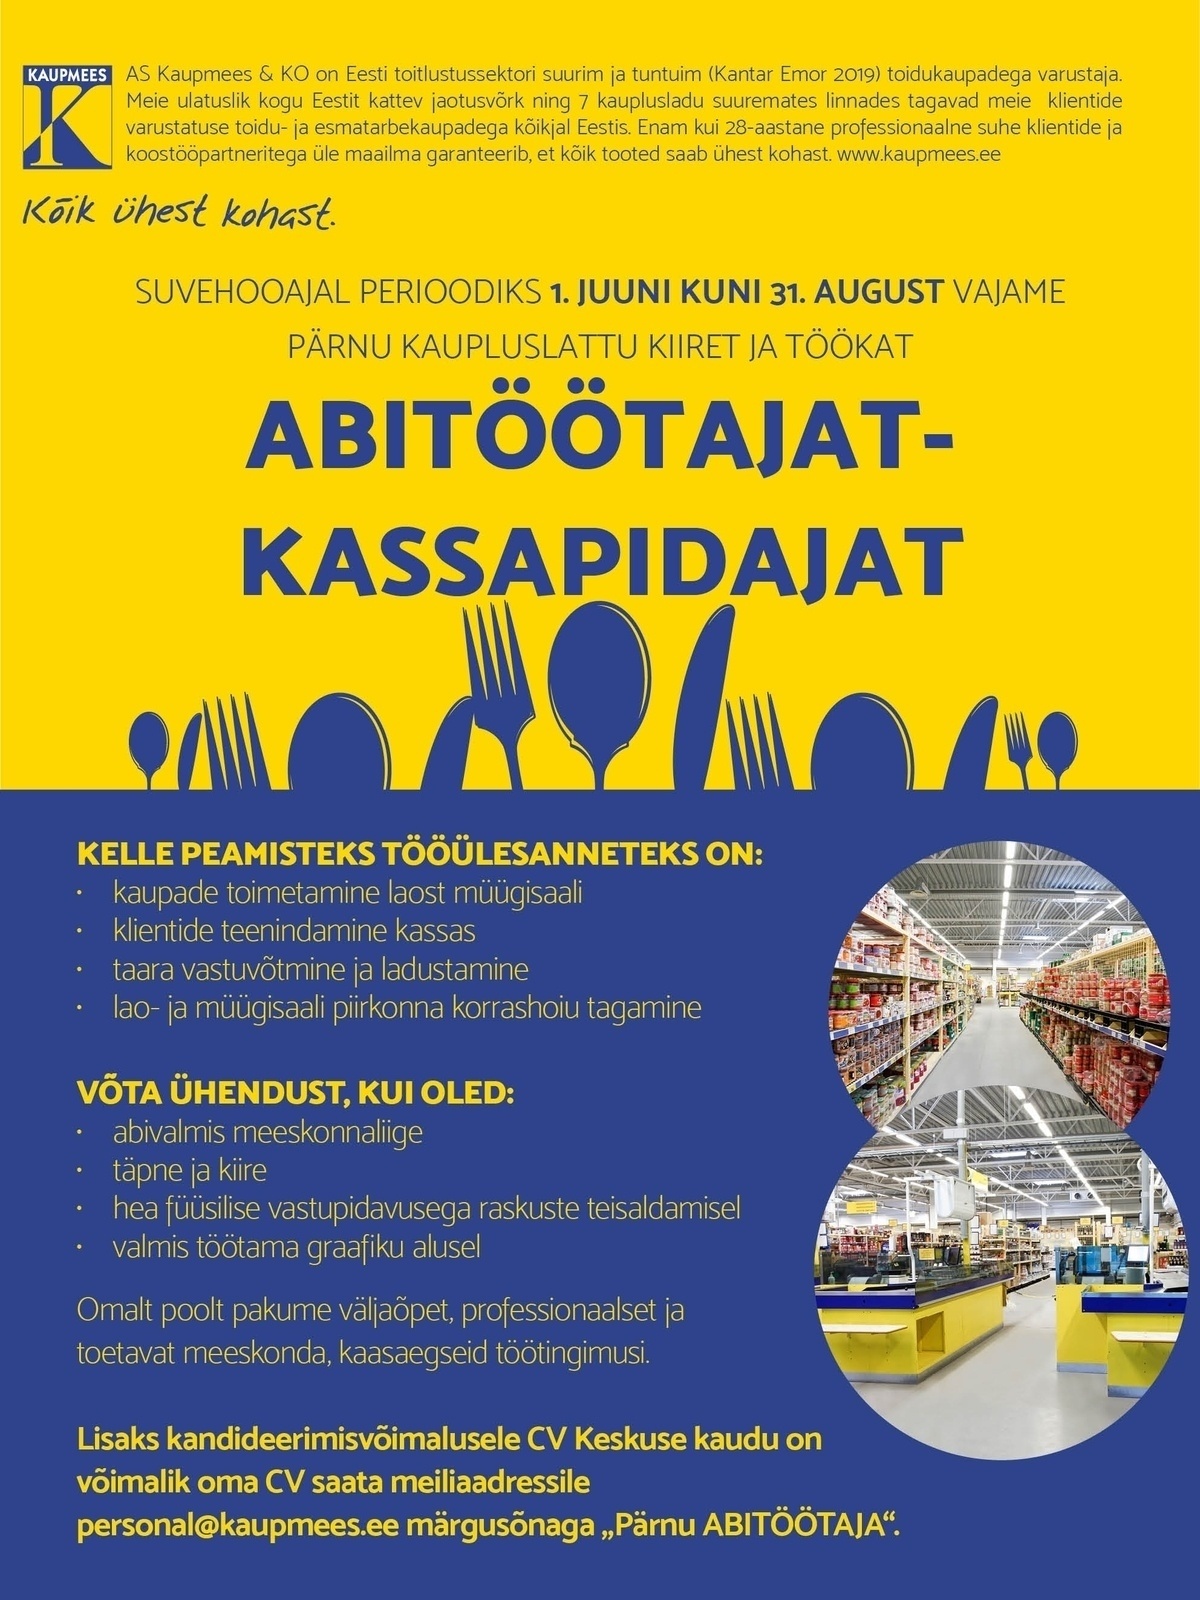 Kaupmees & Ko AS Abitöötaja-kassapidaja Pärnu kaupluslattu suvehooajaks